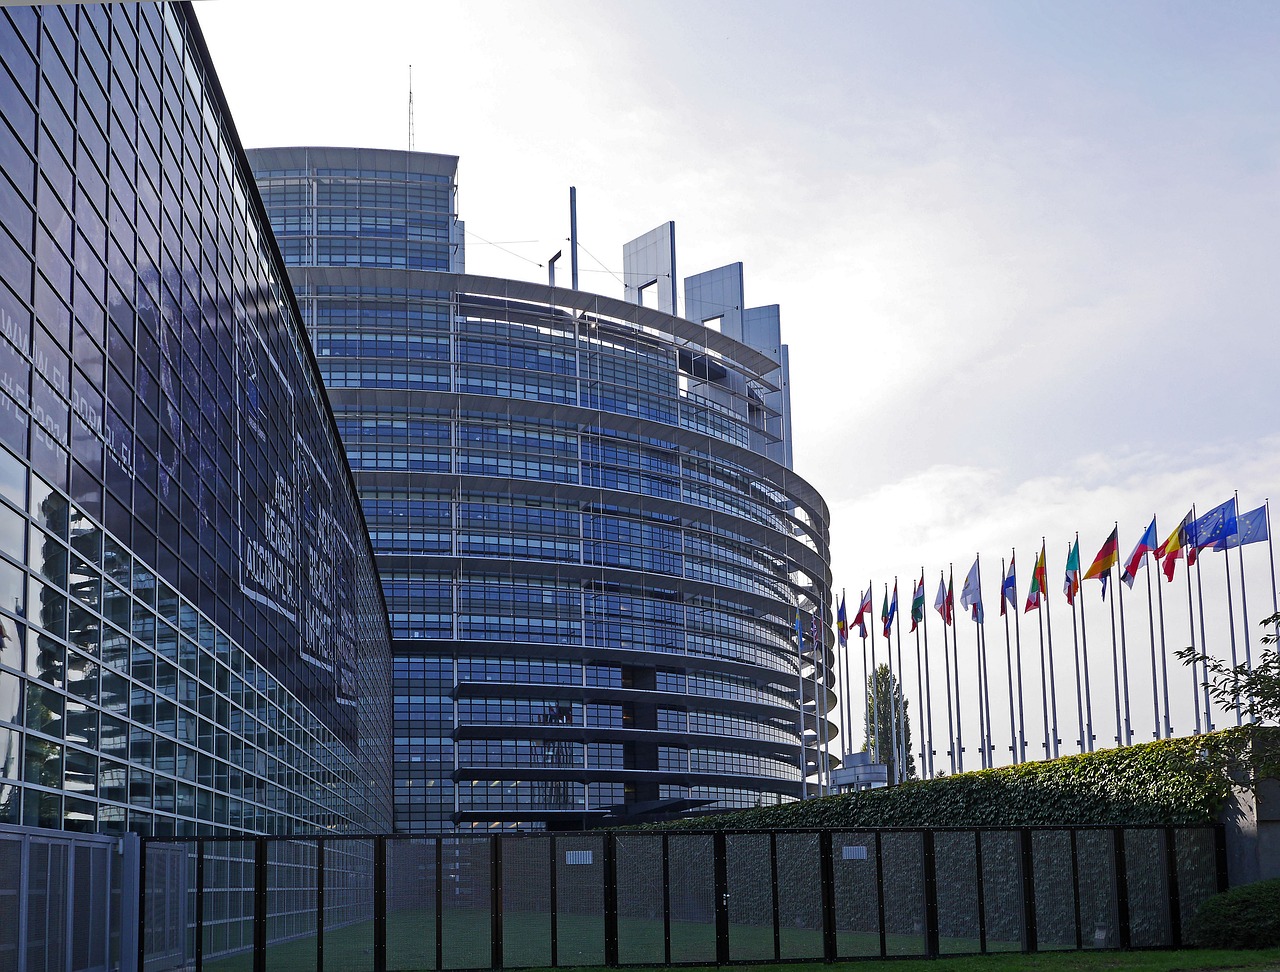 Europos Parlamentas, Strasbourg, Architektūra, Eu, Europos Sąjunga, France, Alsace, Pastatas, Rotunda, Europos Miestas